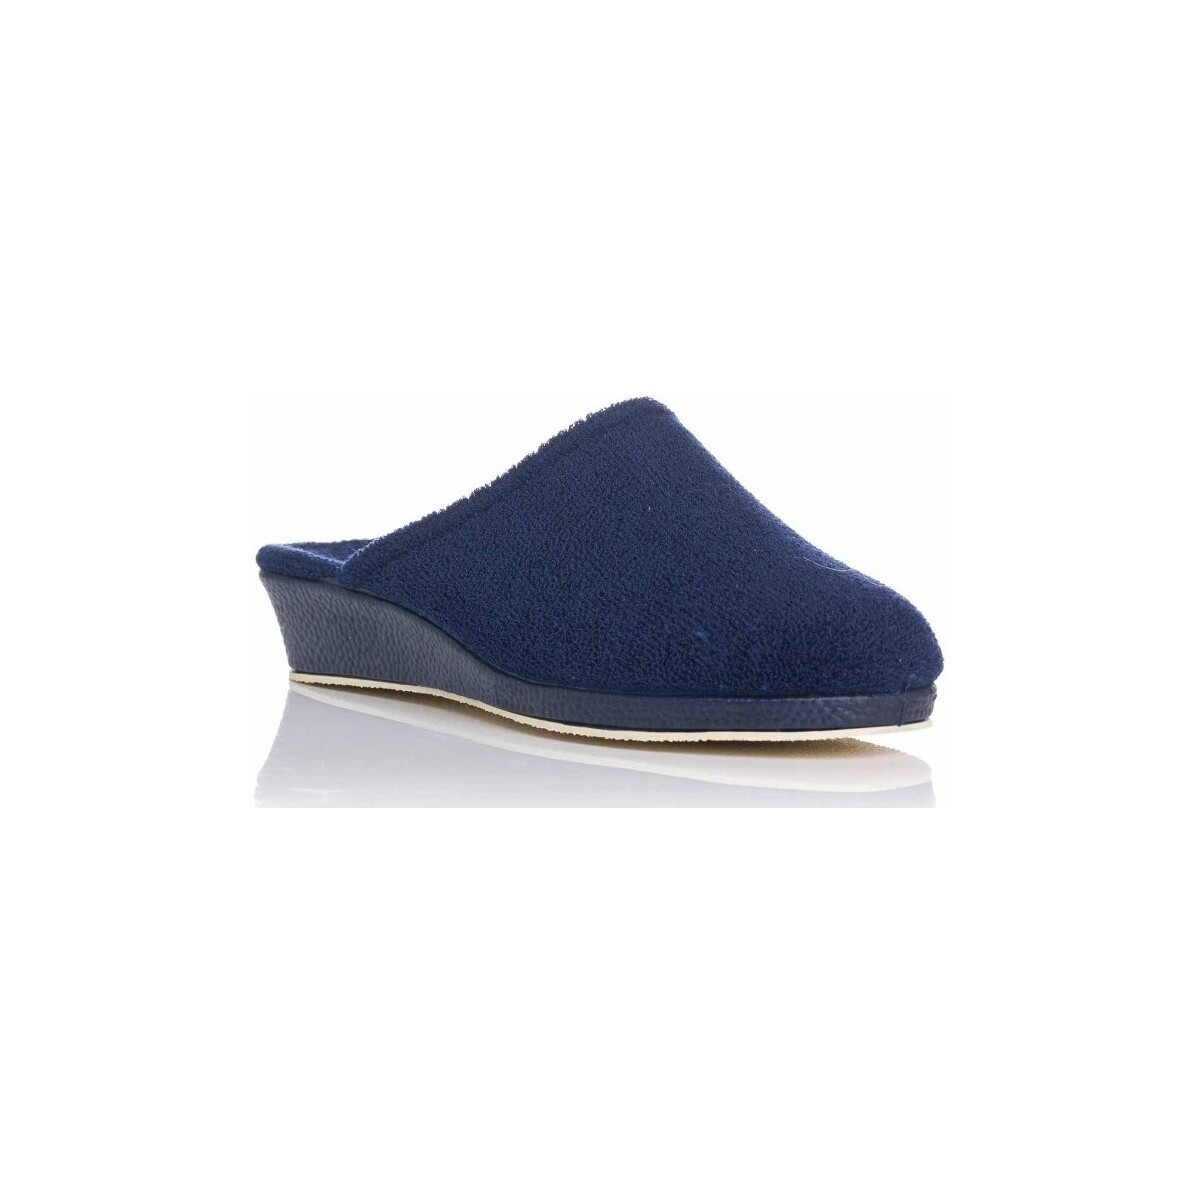 Schuhe Damen Hausschuhe Garzon 650.110 Blau